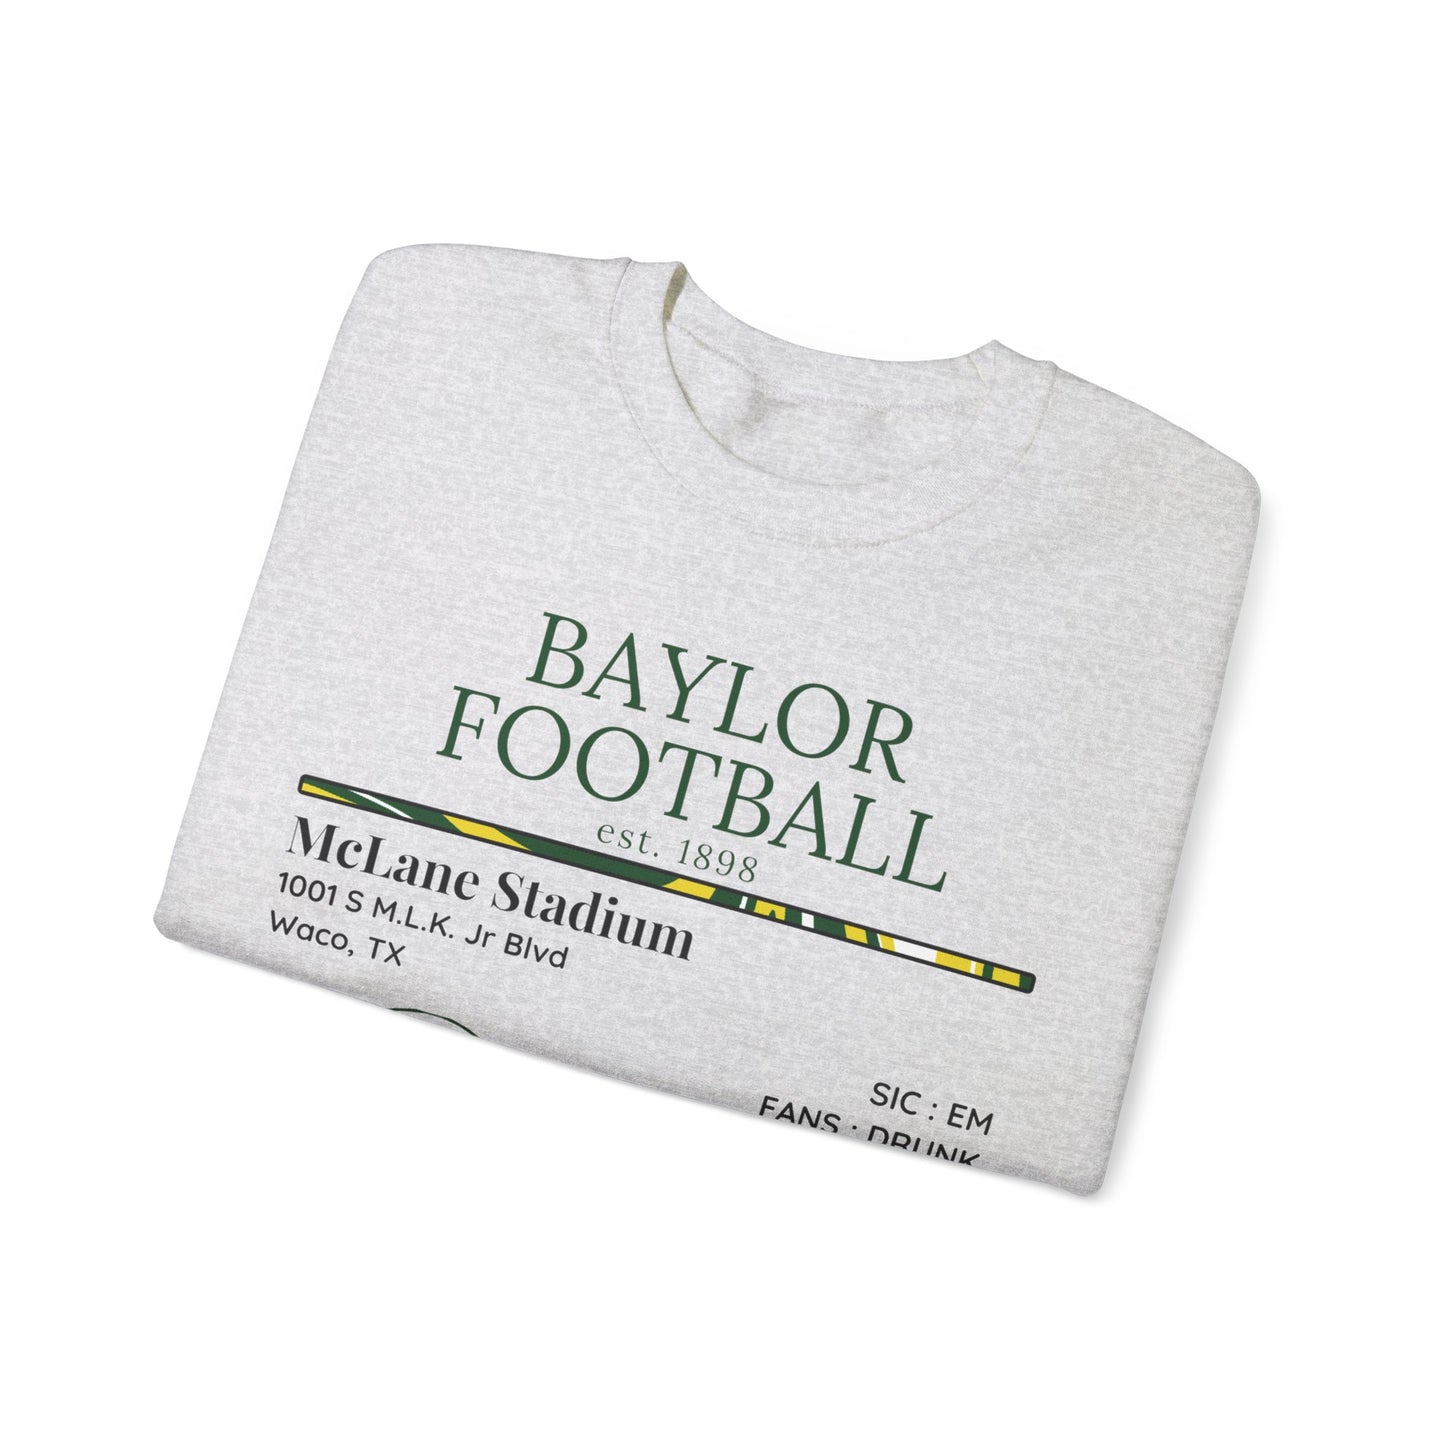 Baylor Football Sweatshirt